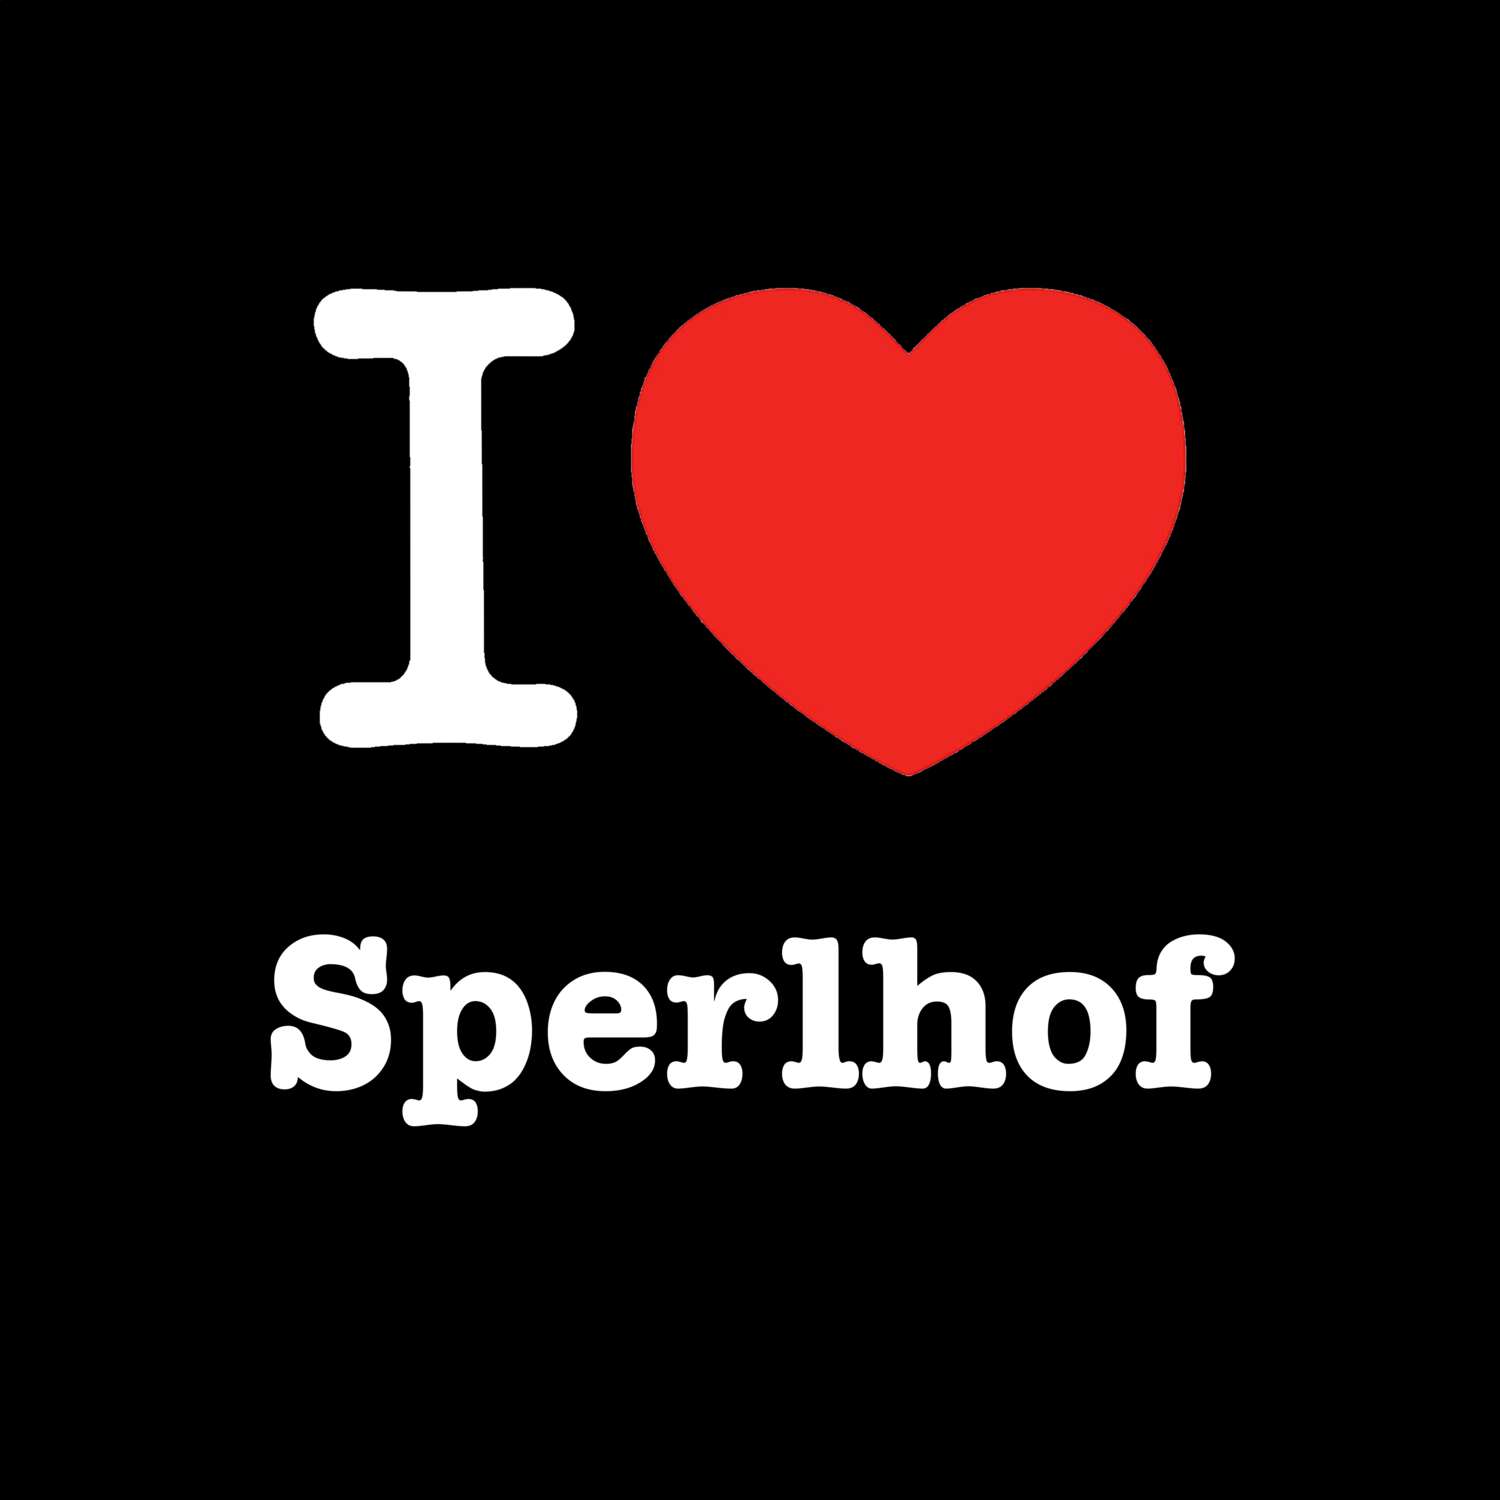 Sperlhof T-Shirt »I love«